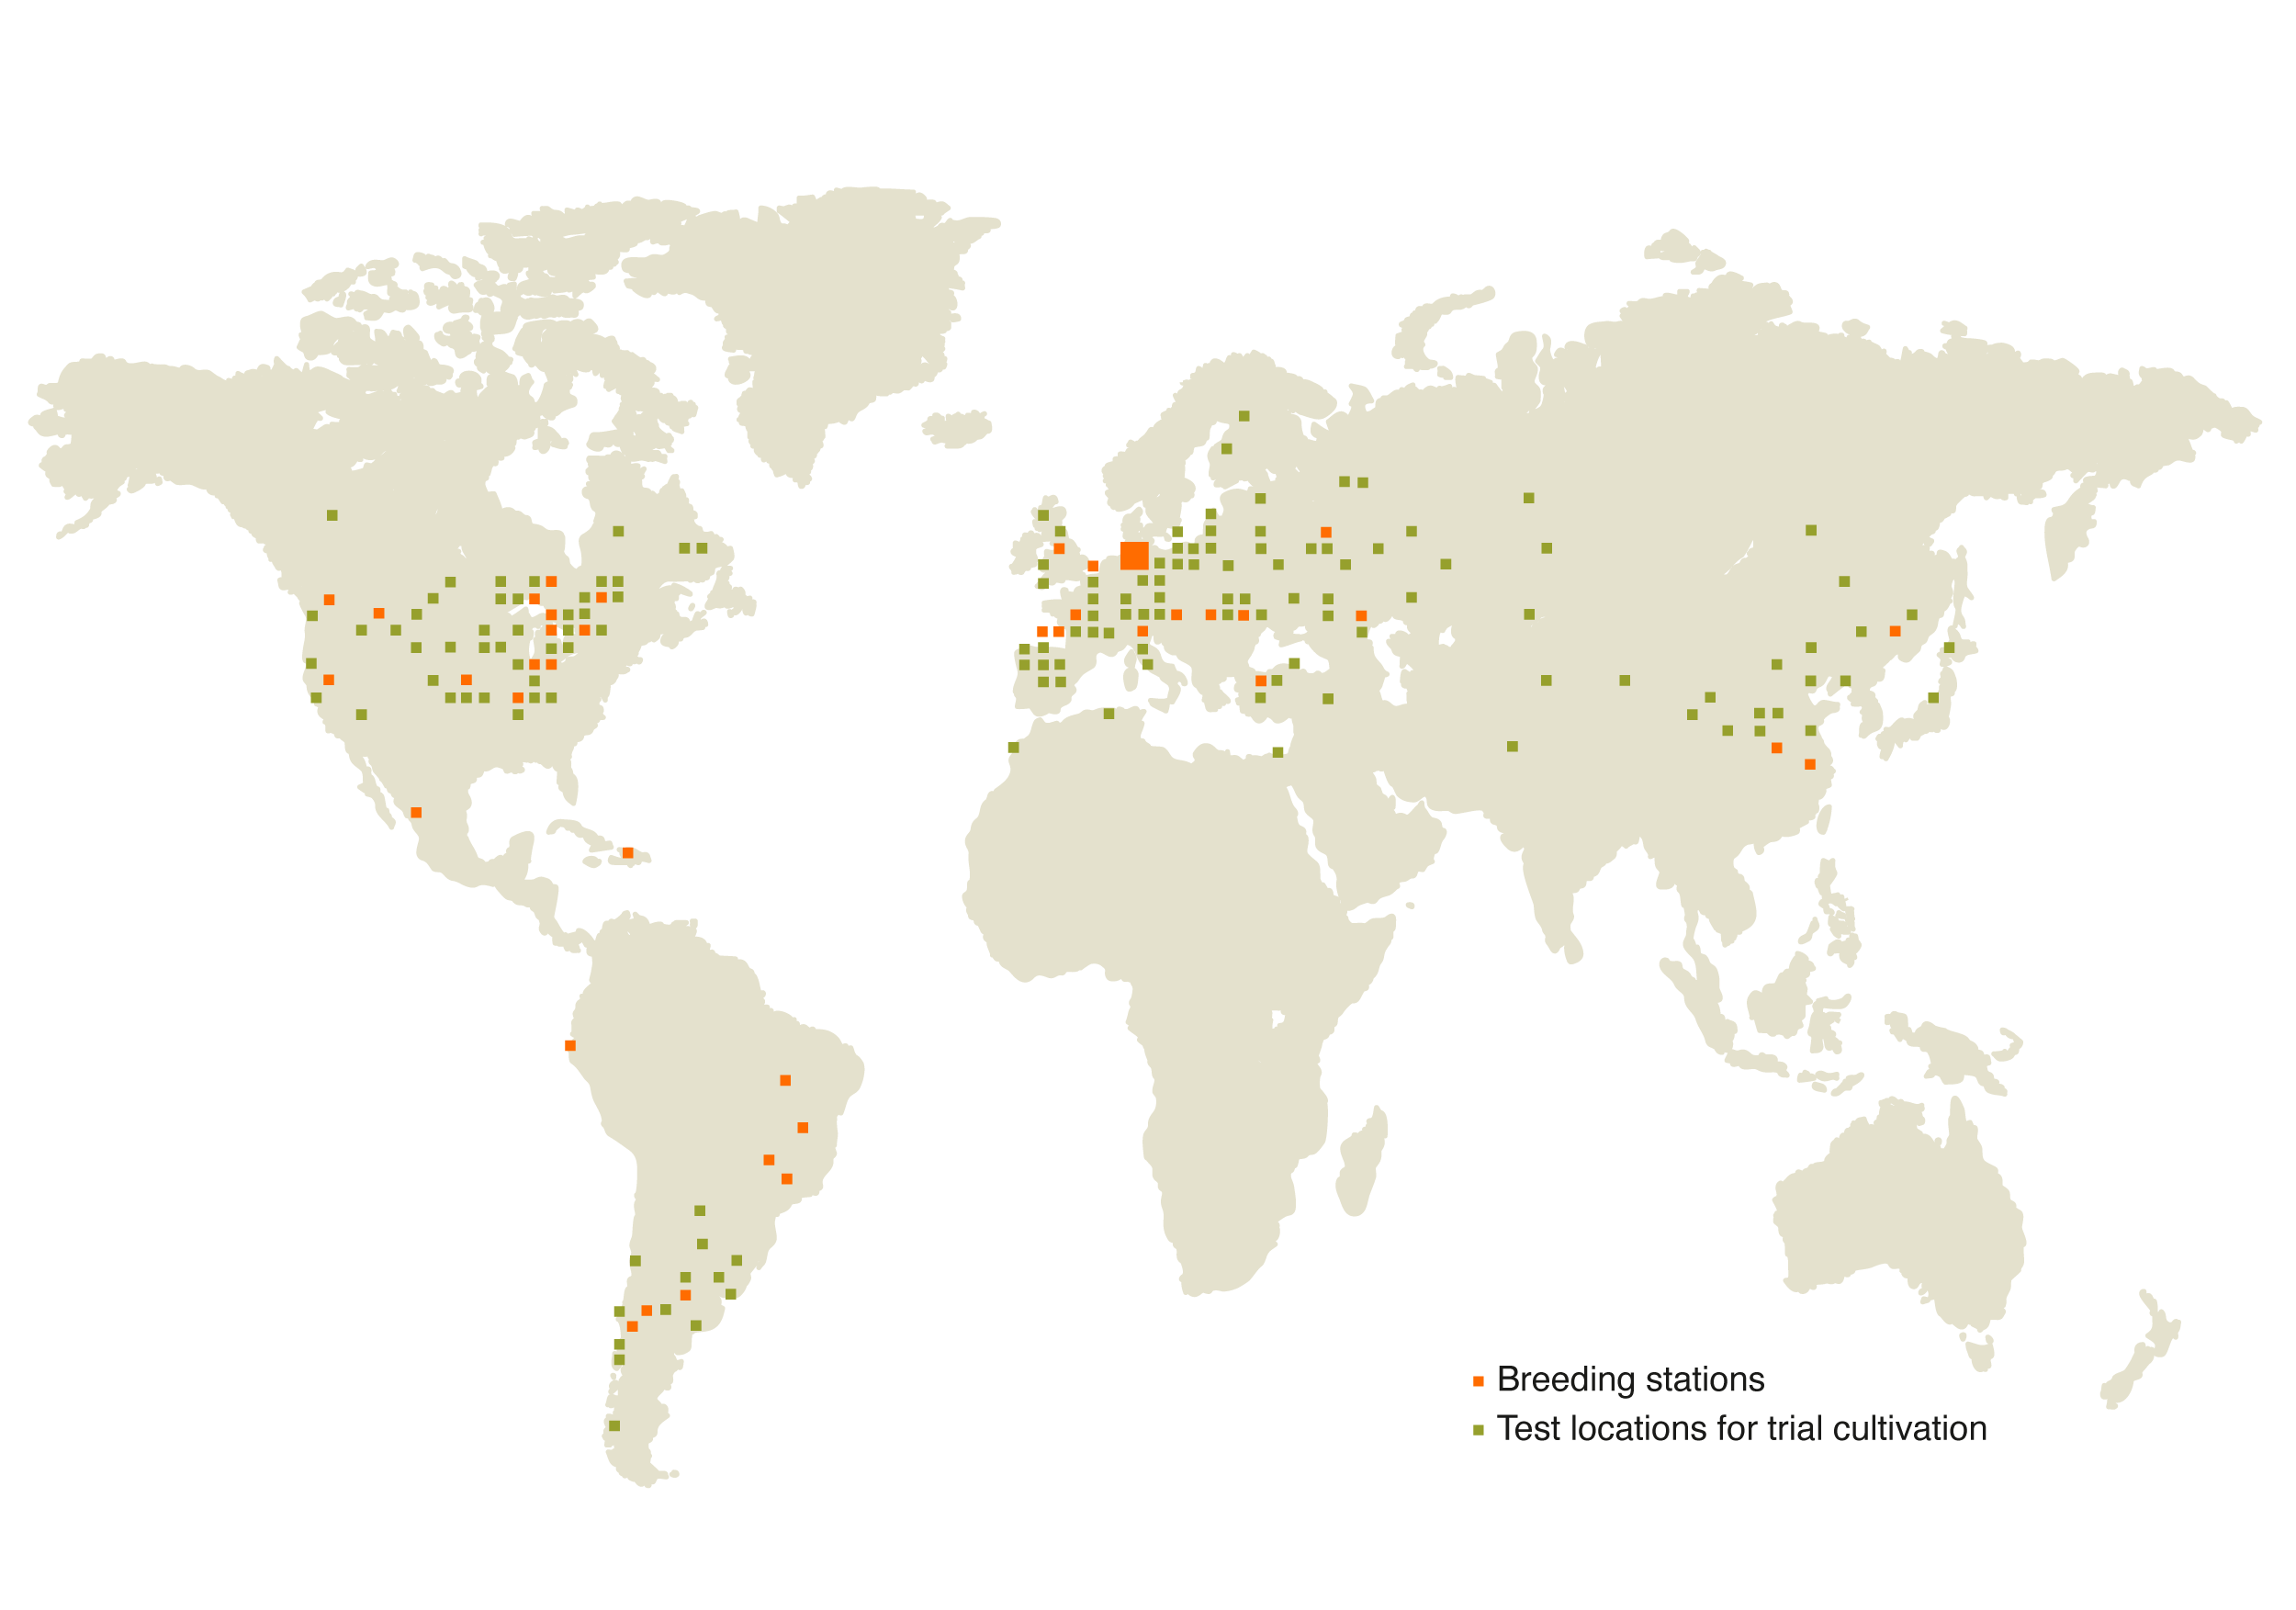 Mapa světa s vyznačenými šlechtitelskými a zkušebními stanicemi